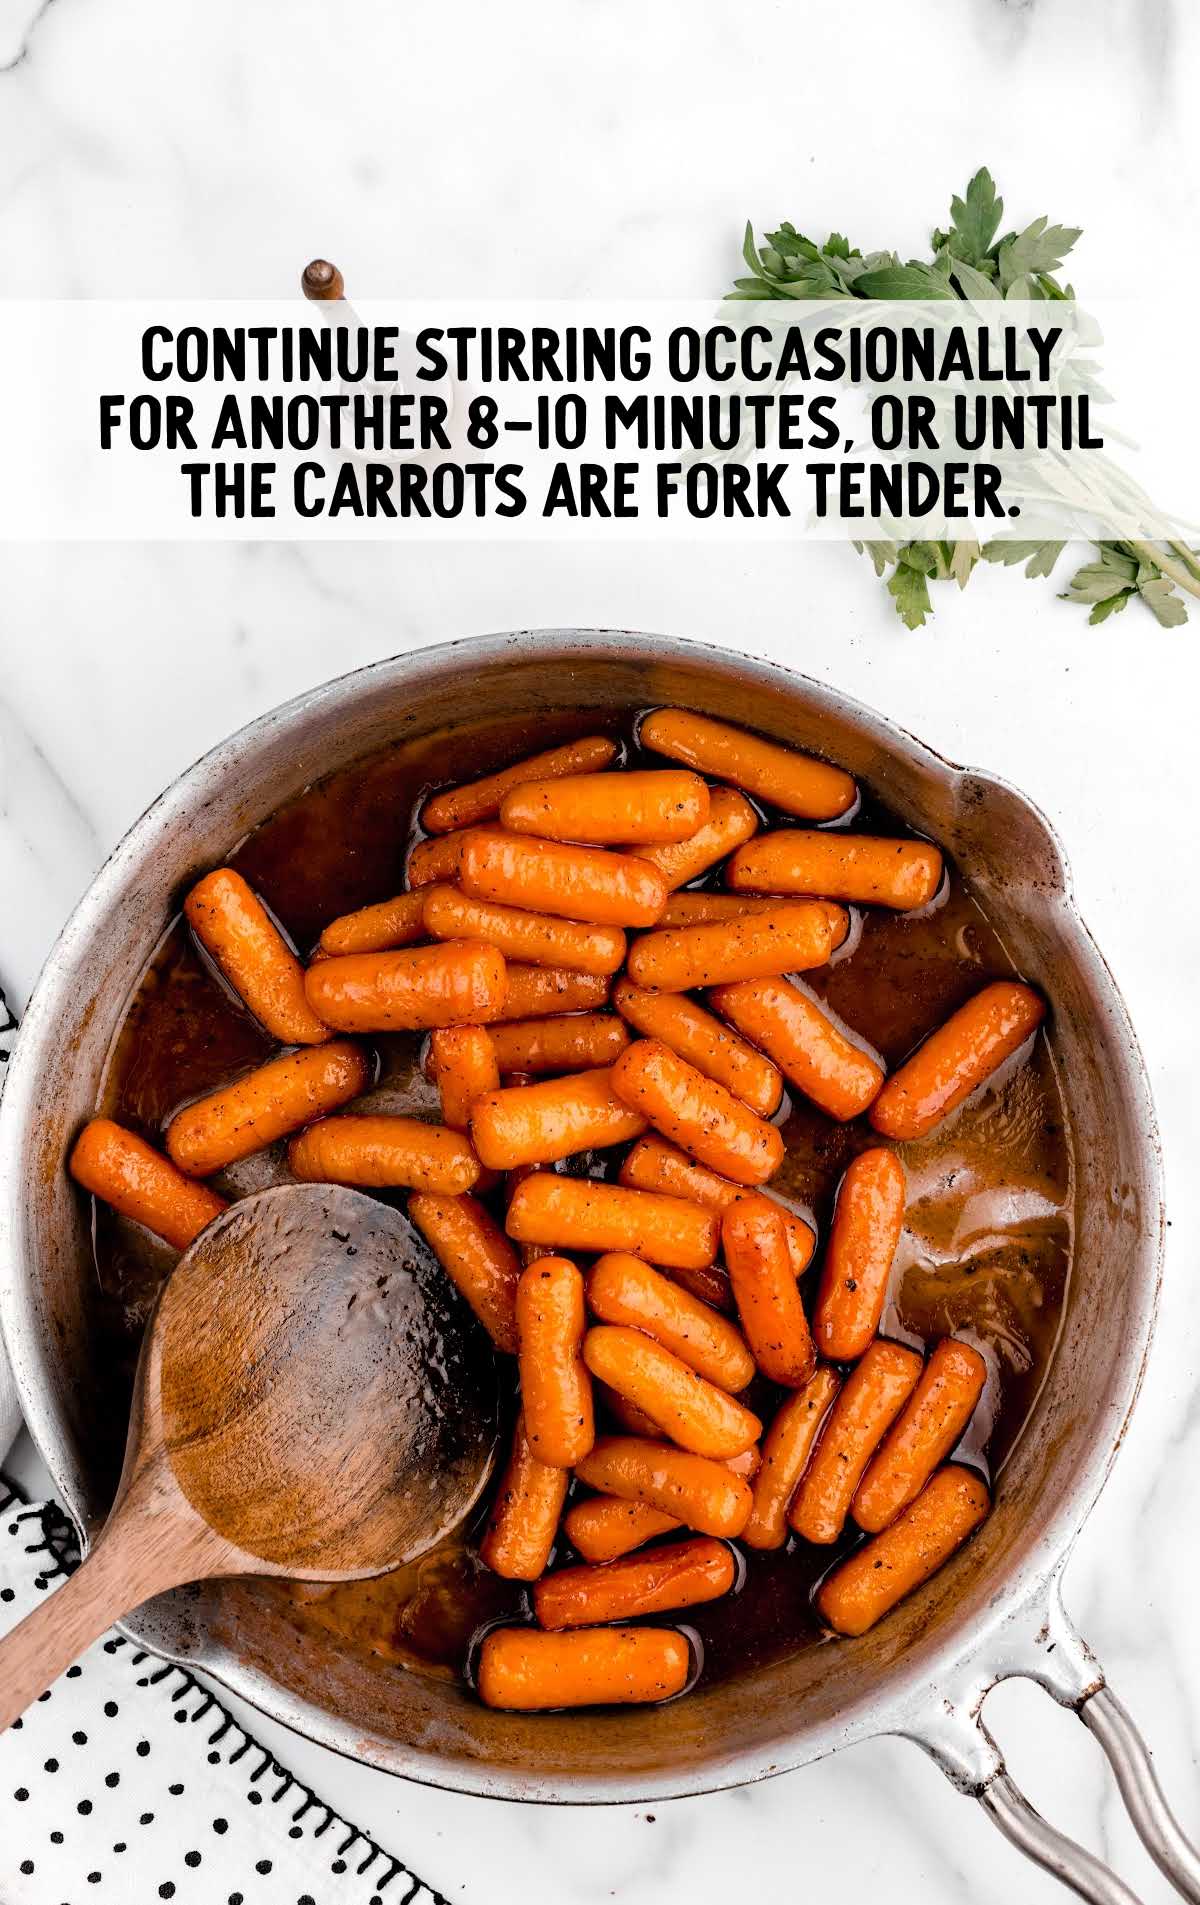 cook carrots until fork tender